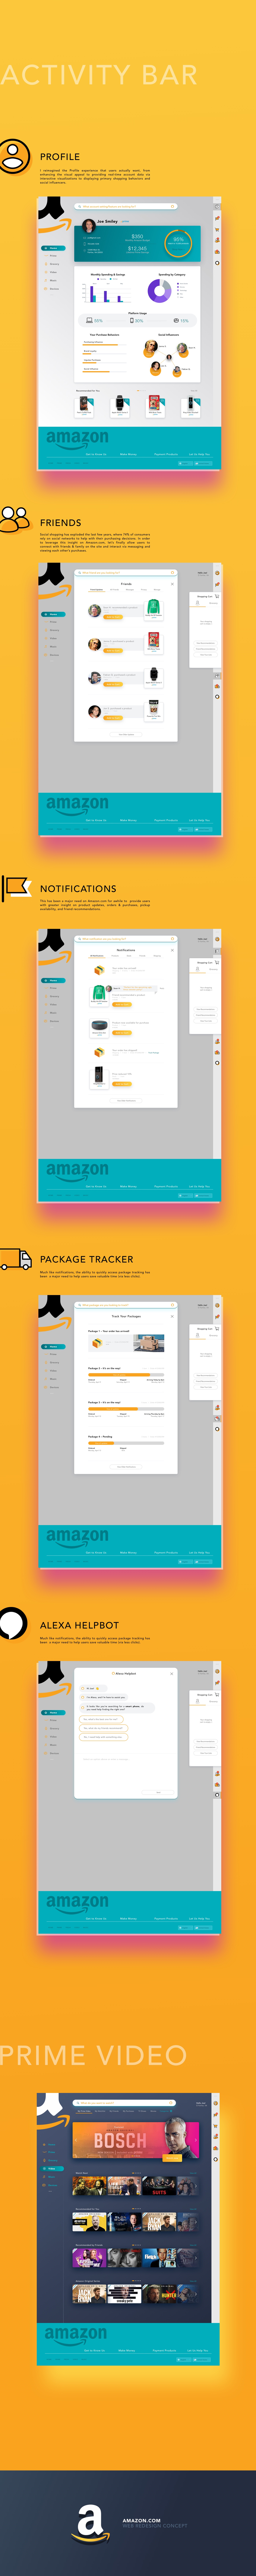 Joe Smiley - Amazon web redesign 2